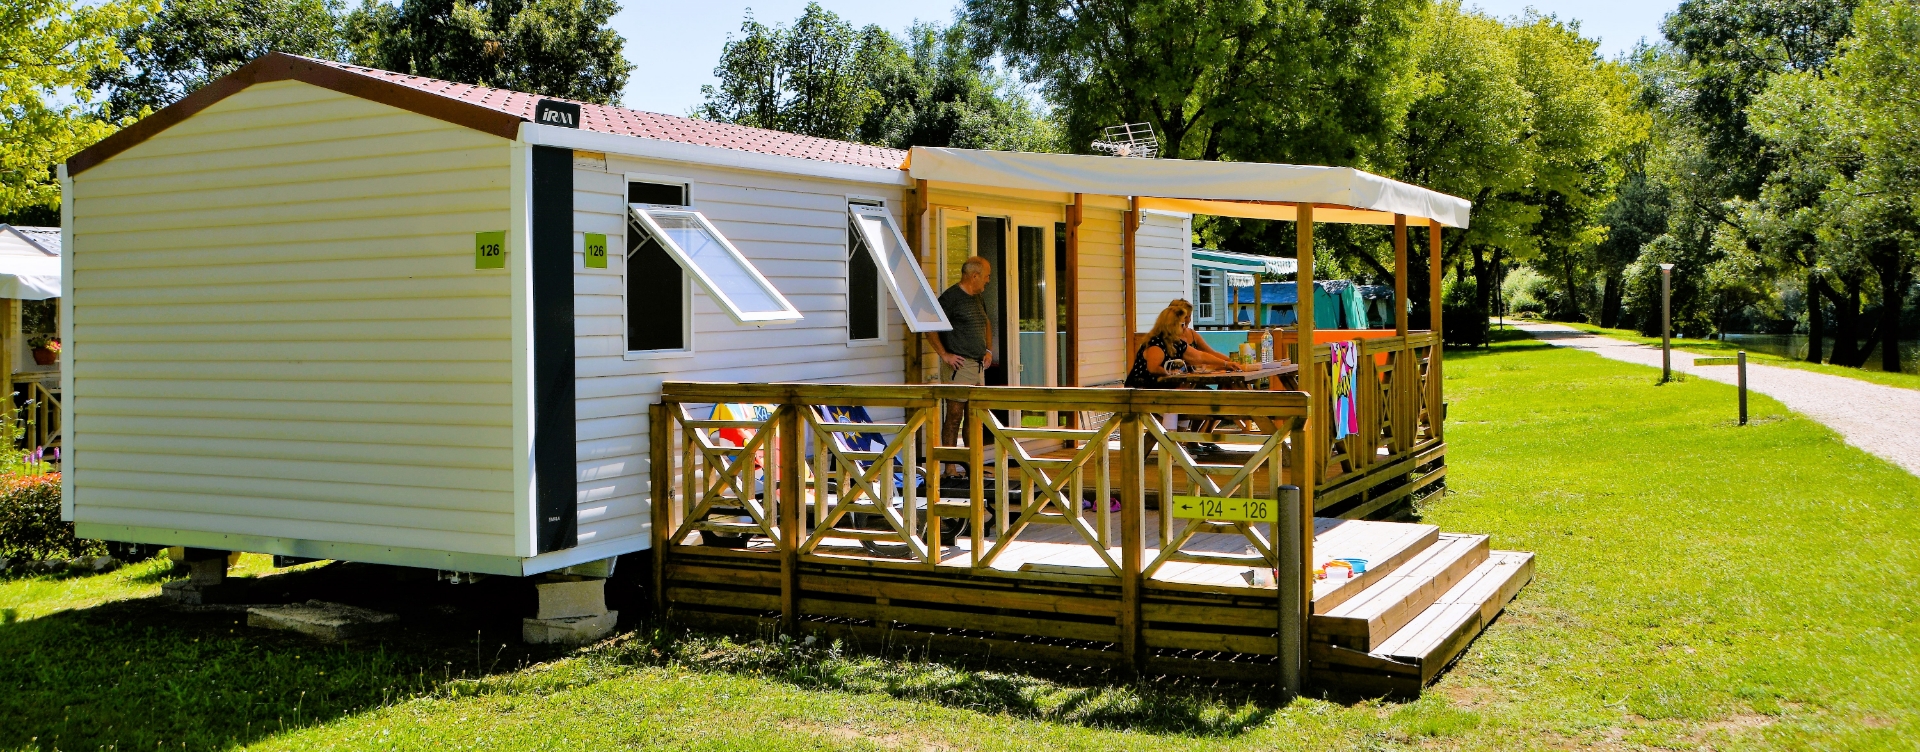 Hébergements en mobil-home dans le Jura, avec terrasse en bois